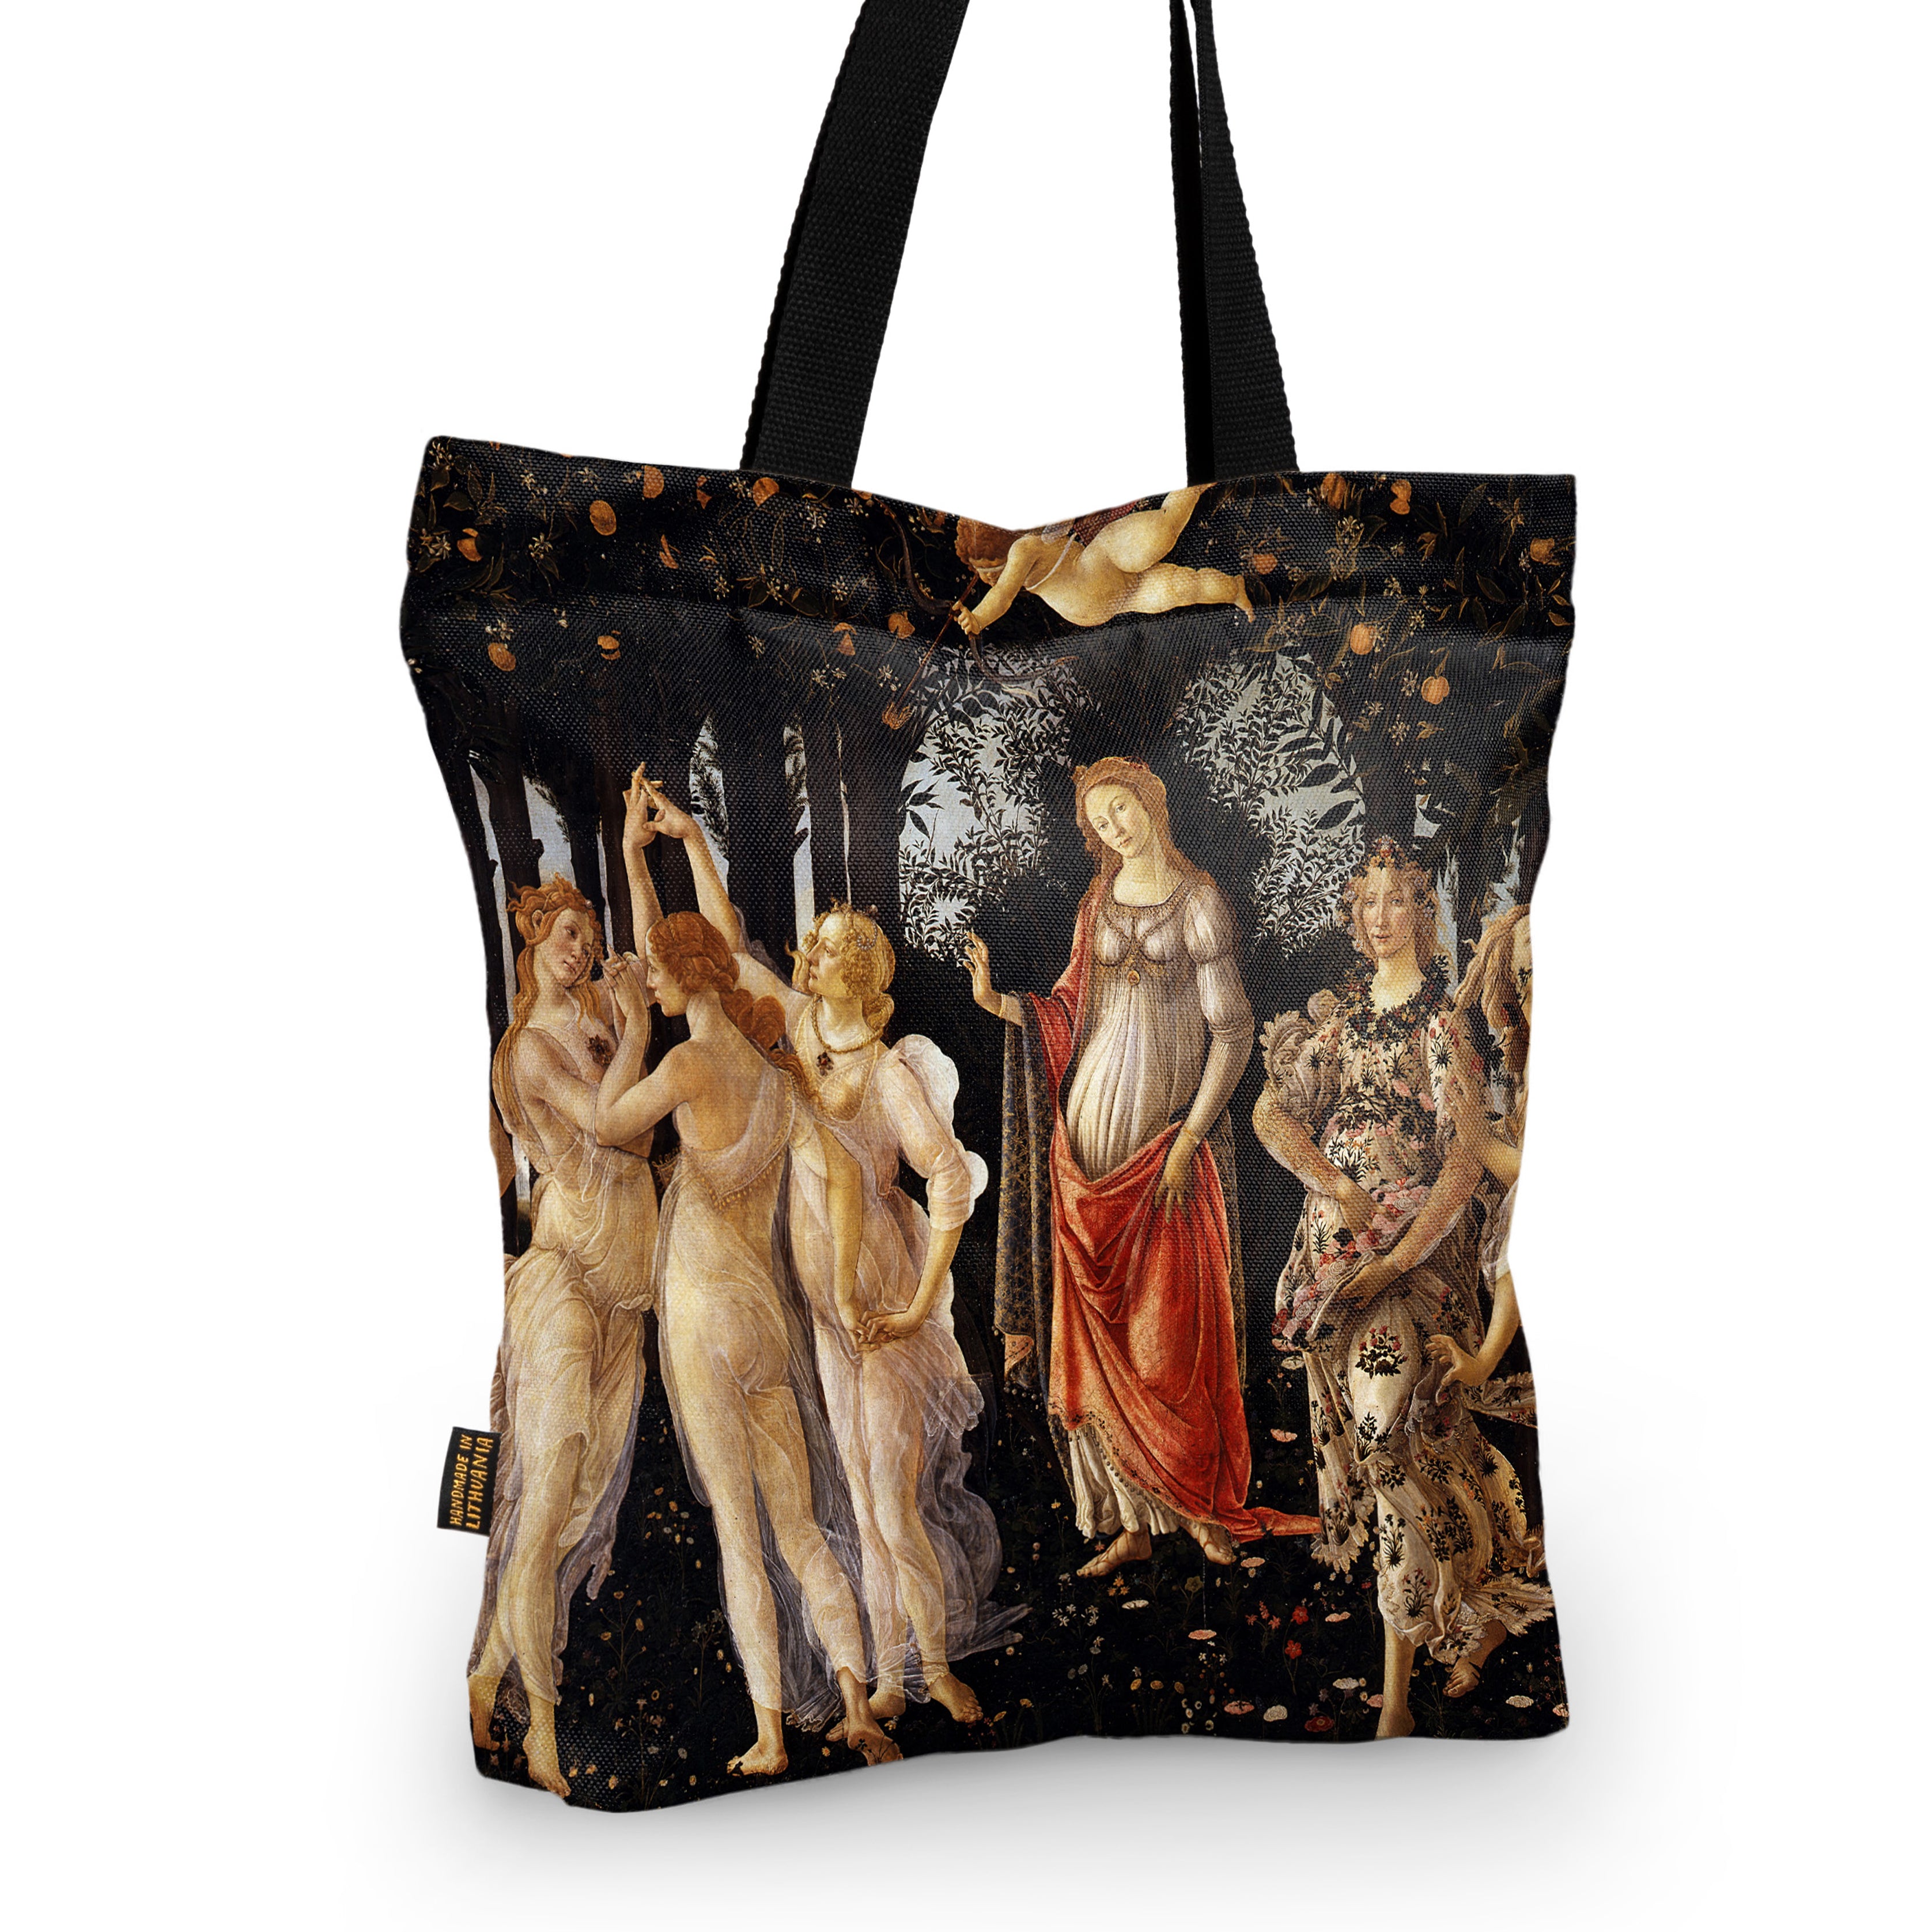 Pirkinių krepšys Sandro Botticelli "Primavera"